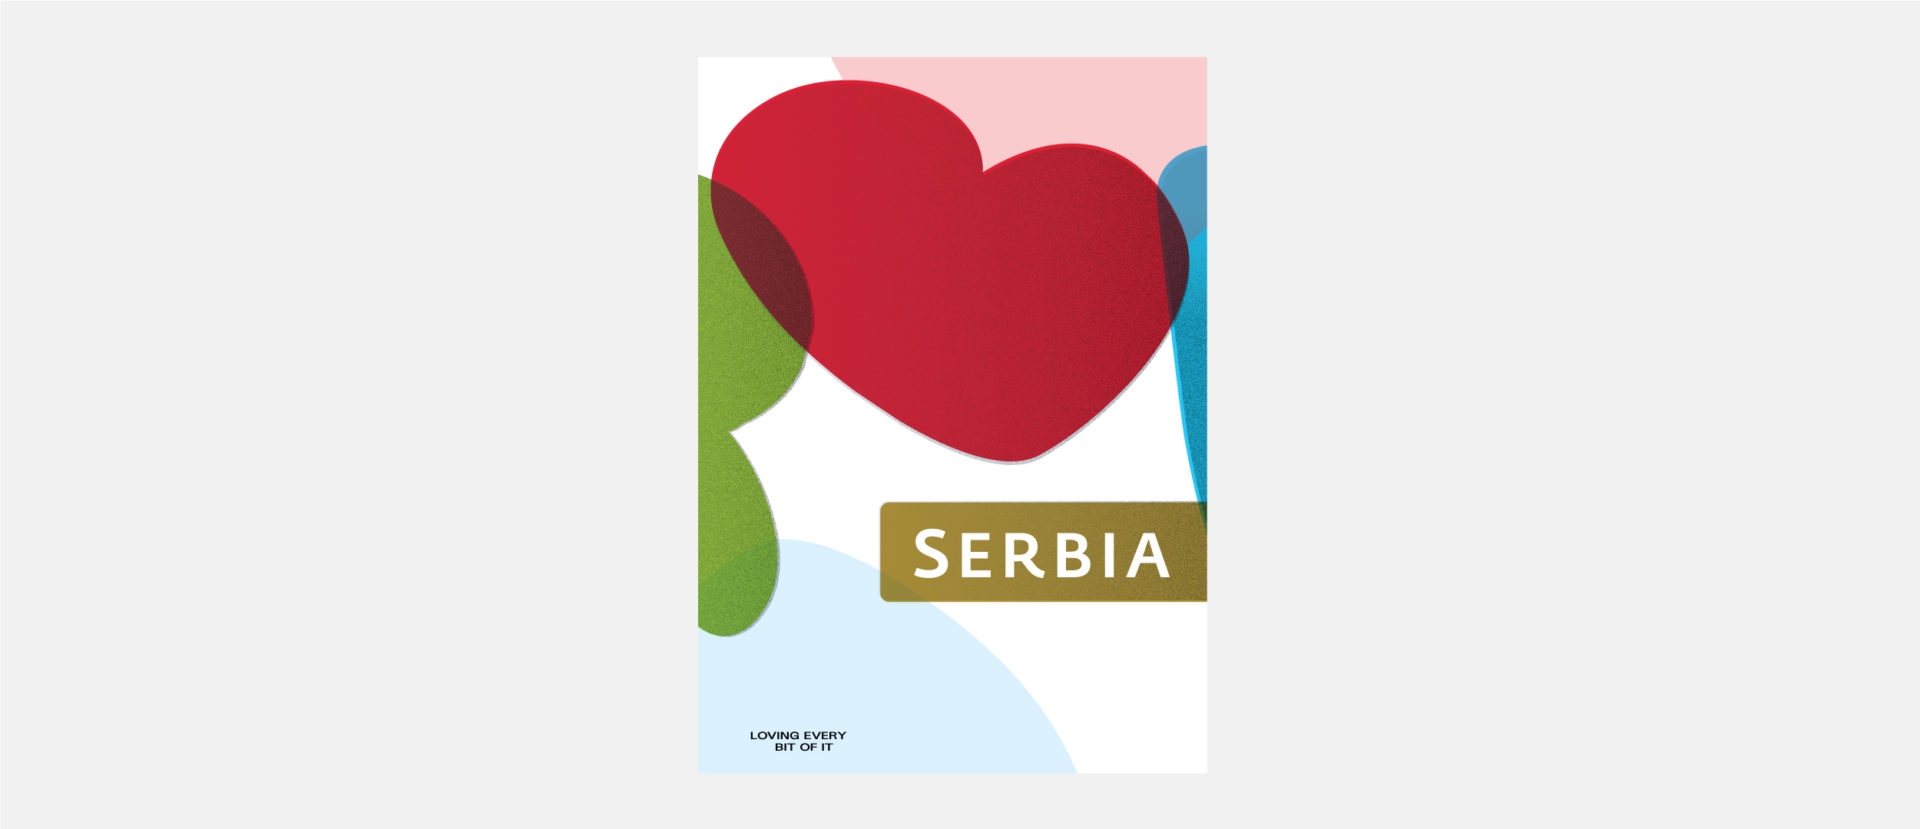 serbia tourism logo